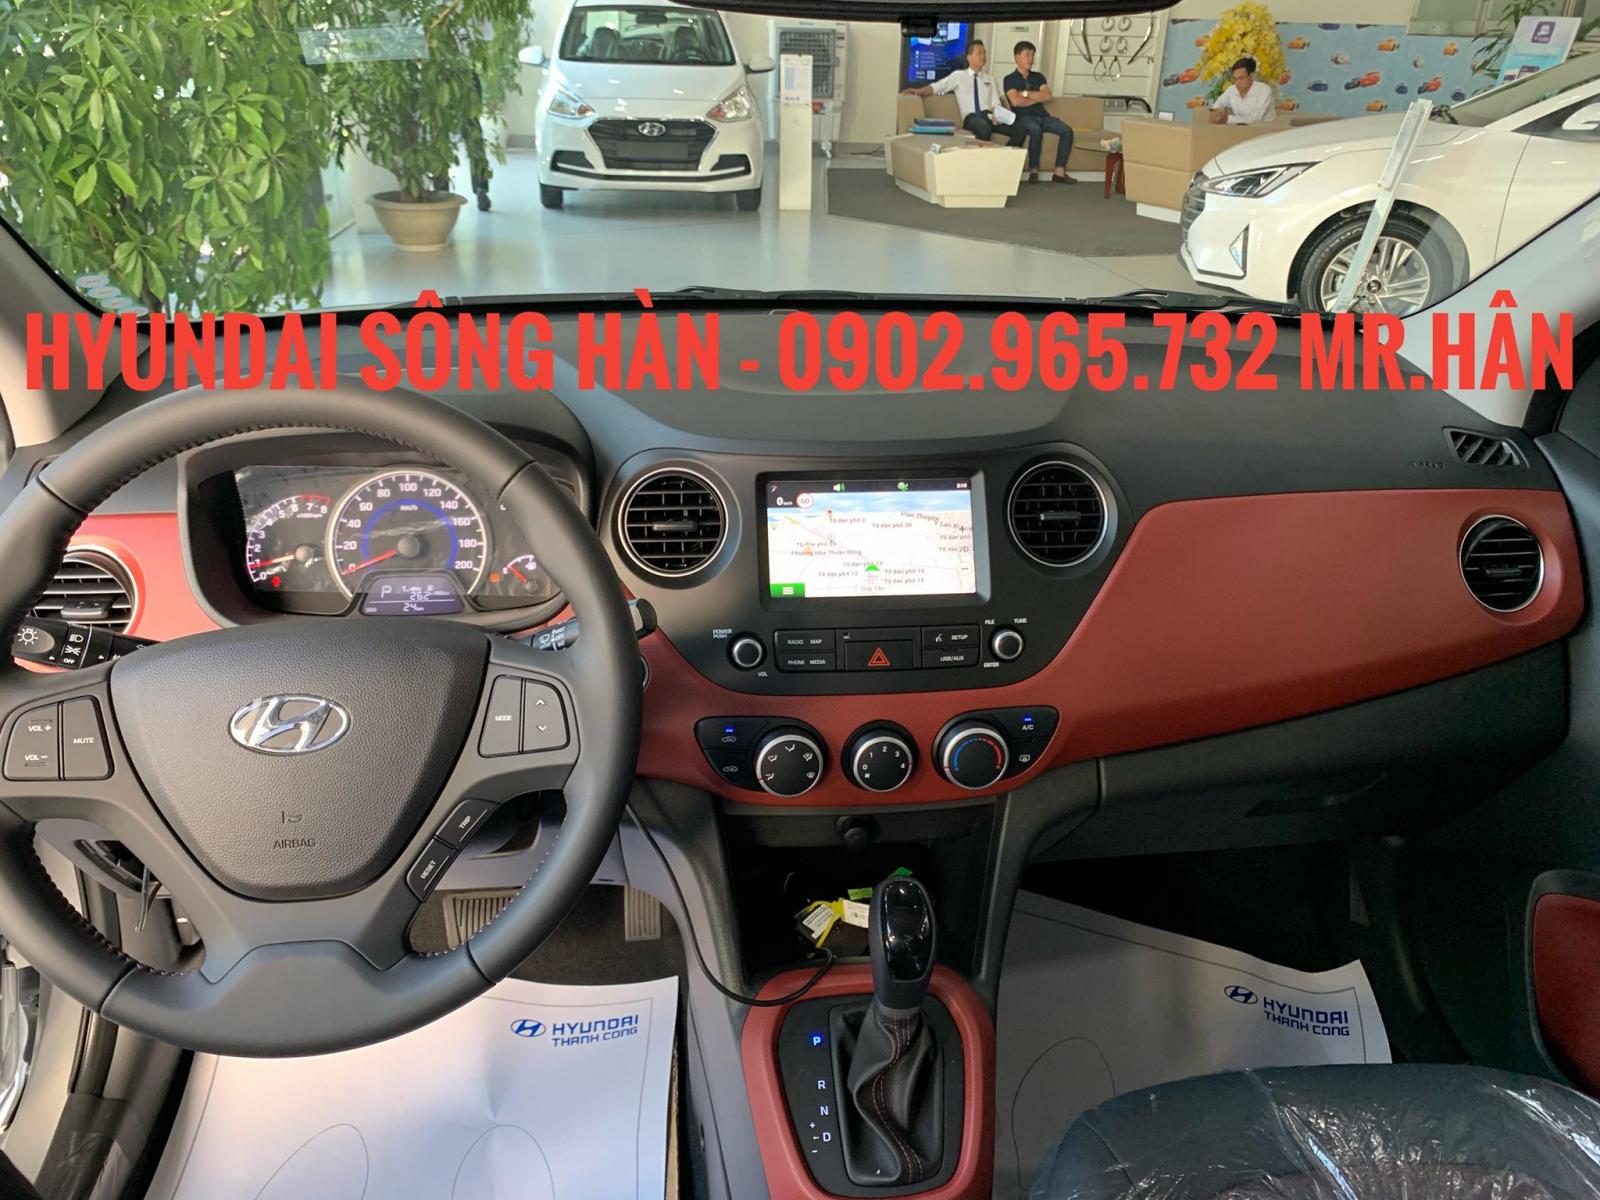 Hyundai Grand i10 2019 - Bán xe Grand i10 tại Đà Nẵng, Hyundai Sông Hàn Đà Nẵng, Lh: Hữu Hân 0902 965 732 24/7